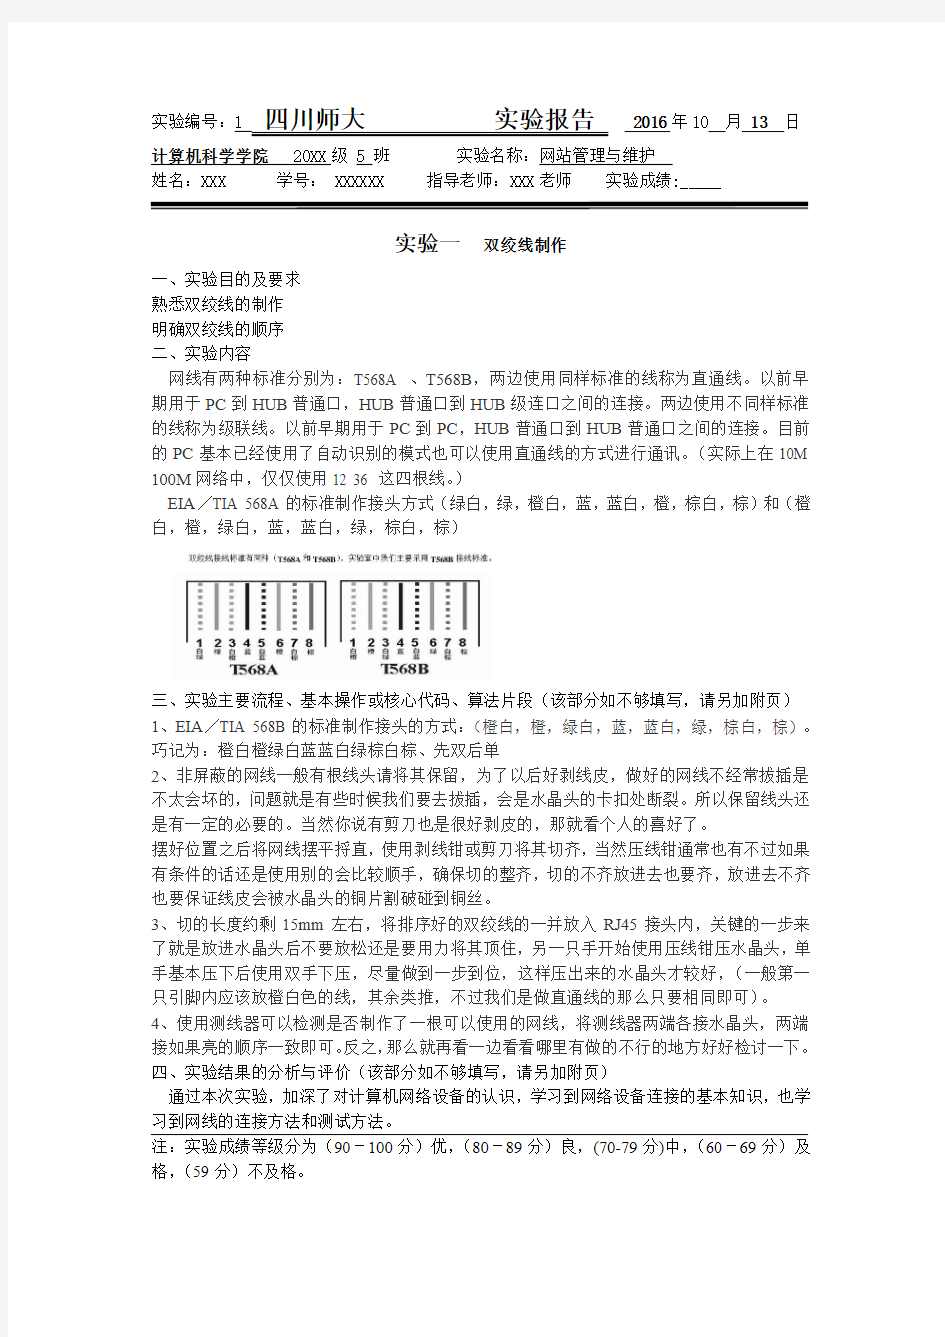 四川师大-网络管理与维护实验报告